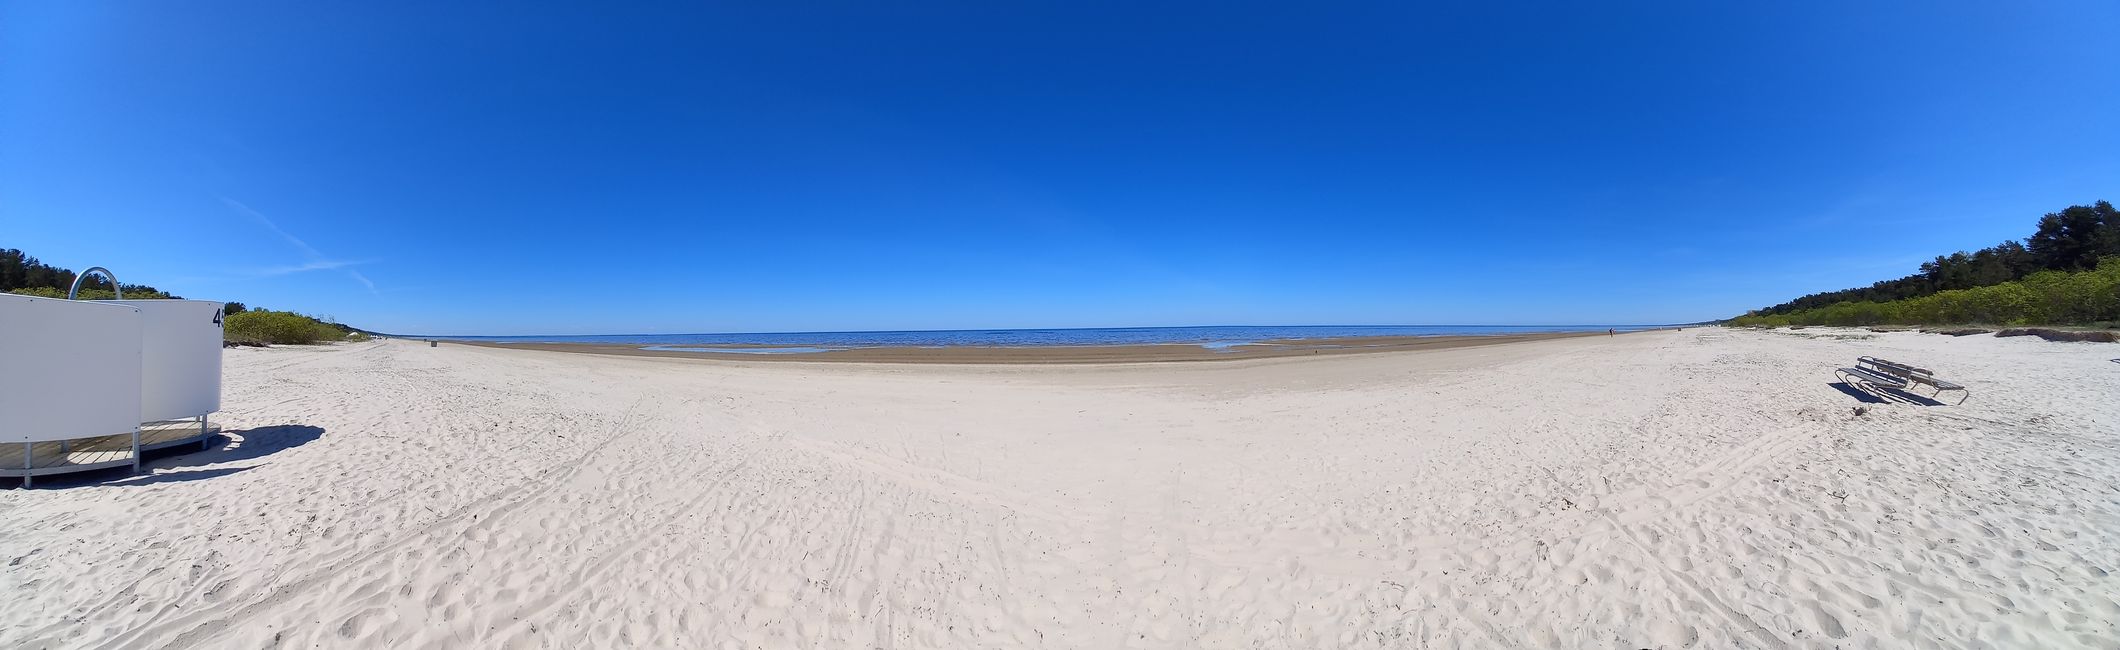 Strand von Jurmala | Riga 3/5 📍